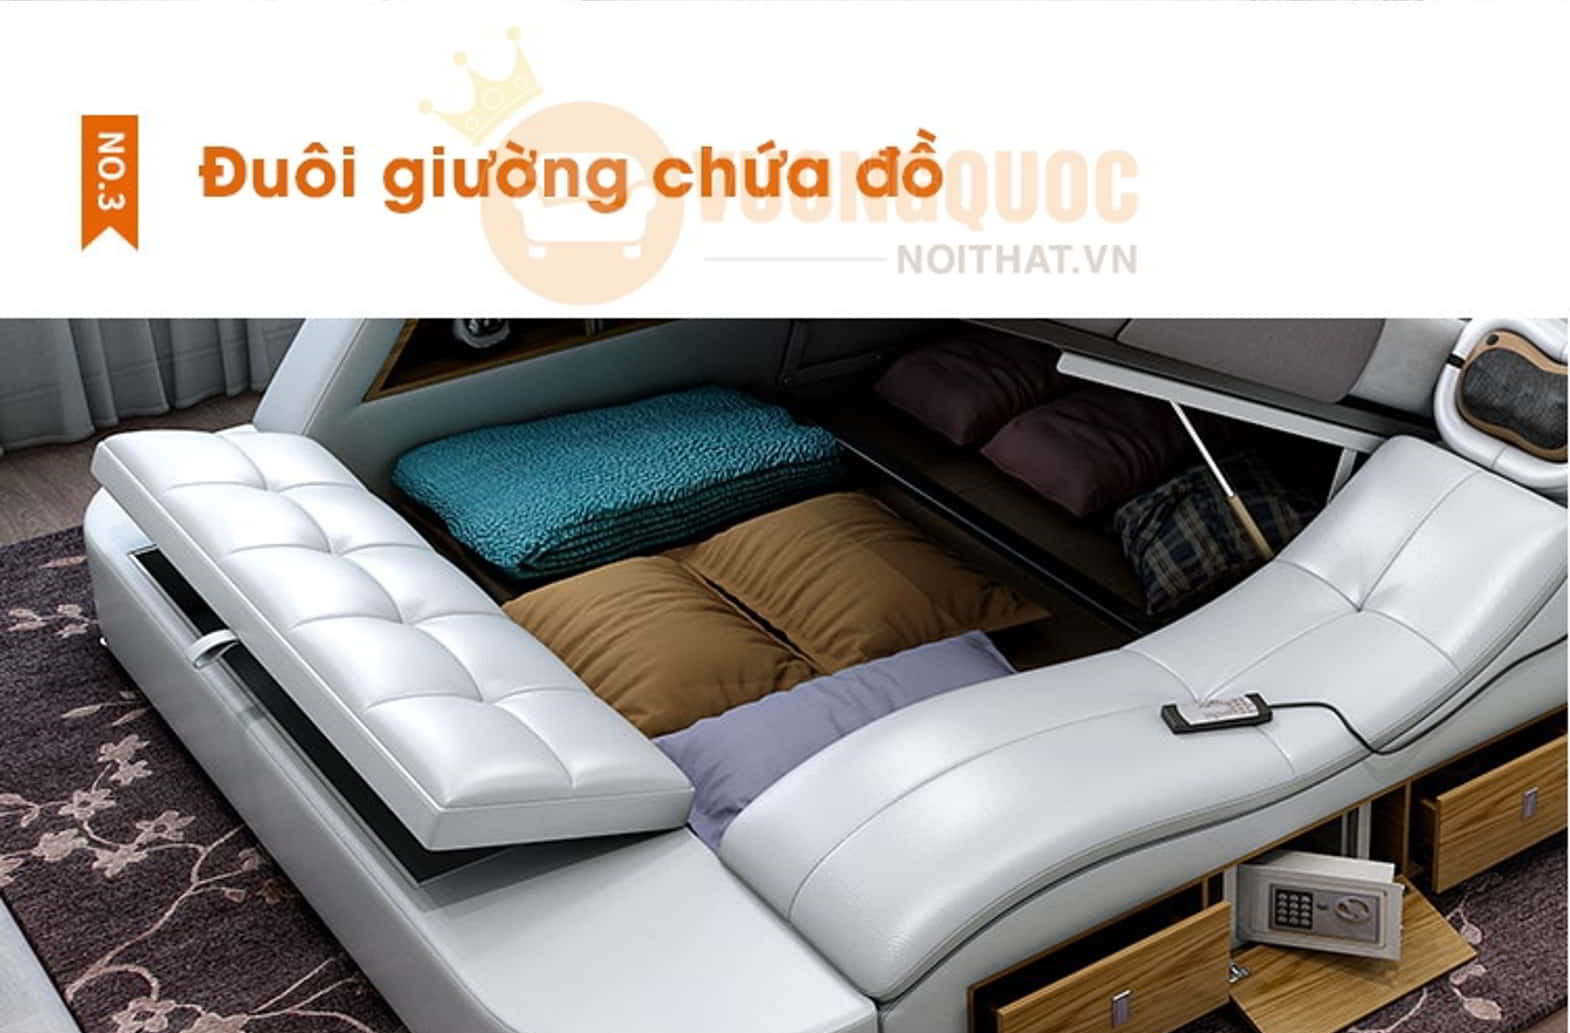 Giường ngủ đa năng nhập khẩu hiện đại YFCP30 đuôi giường chứa đồ